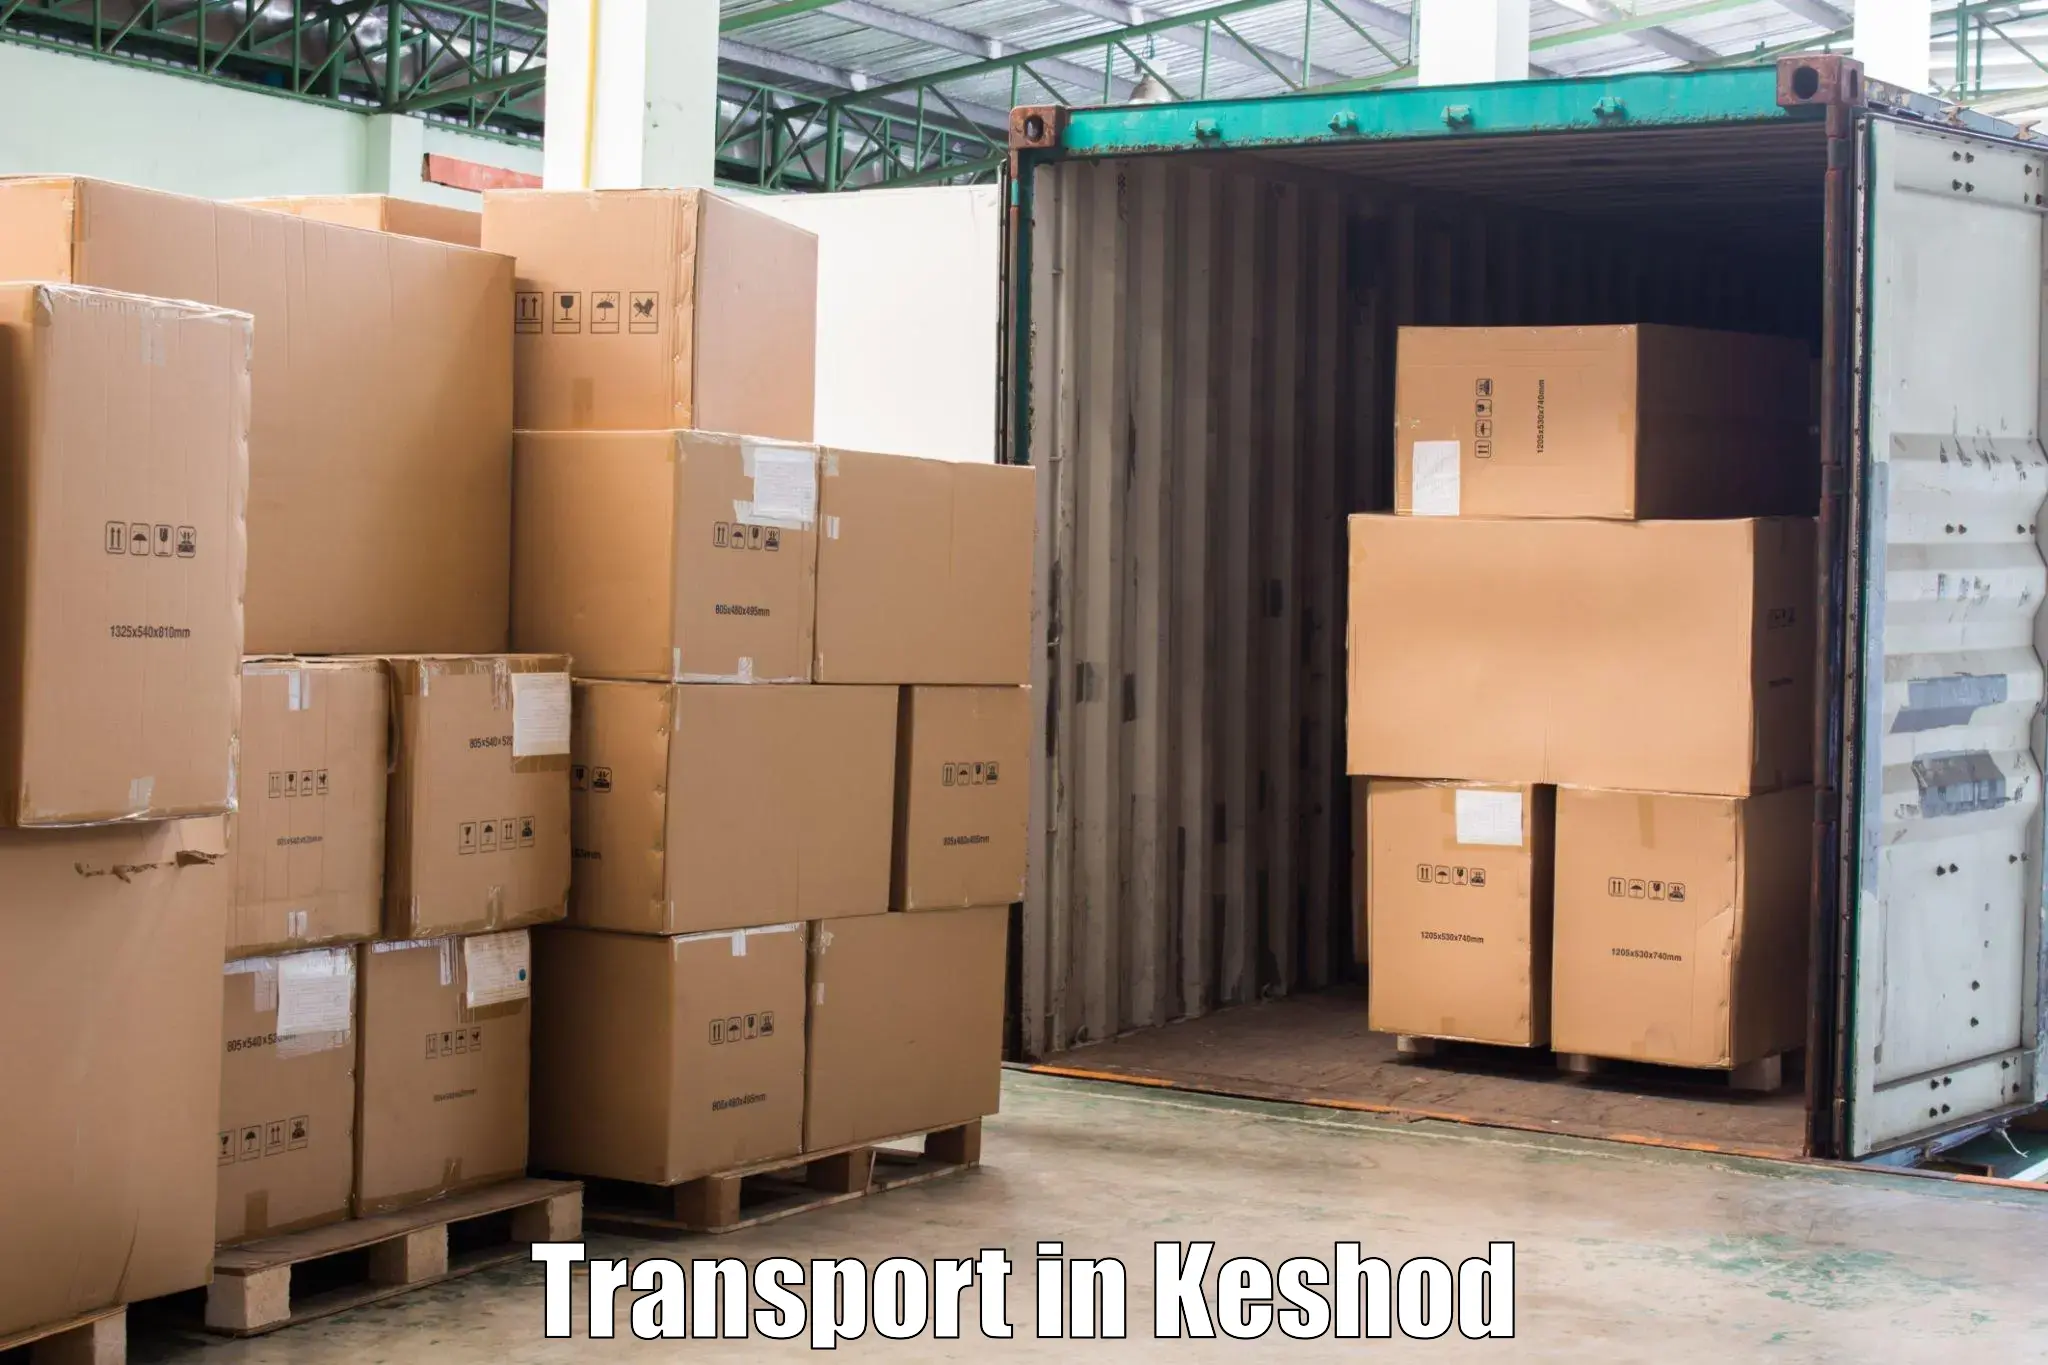 Intercity goods transport in Keshod